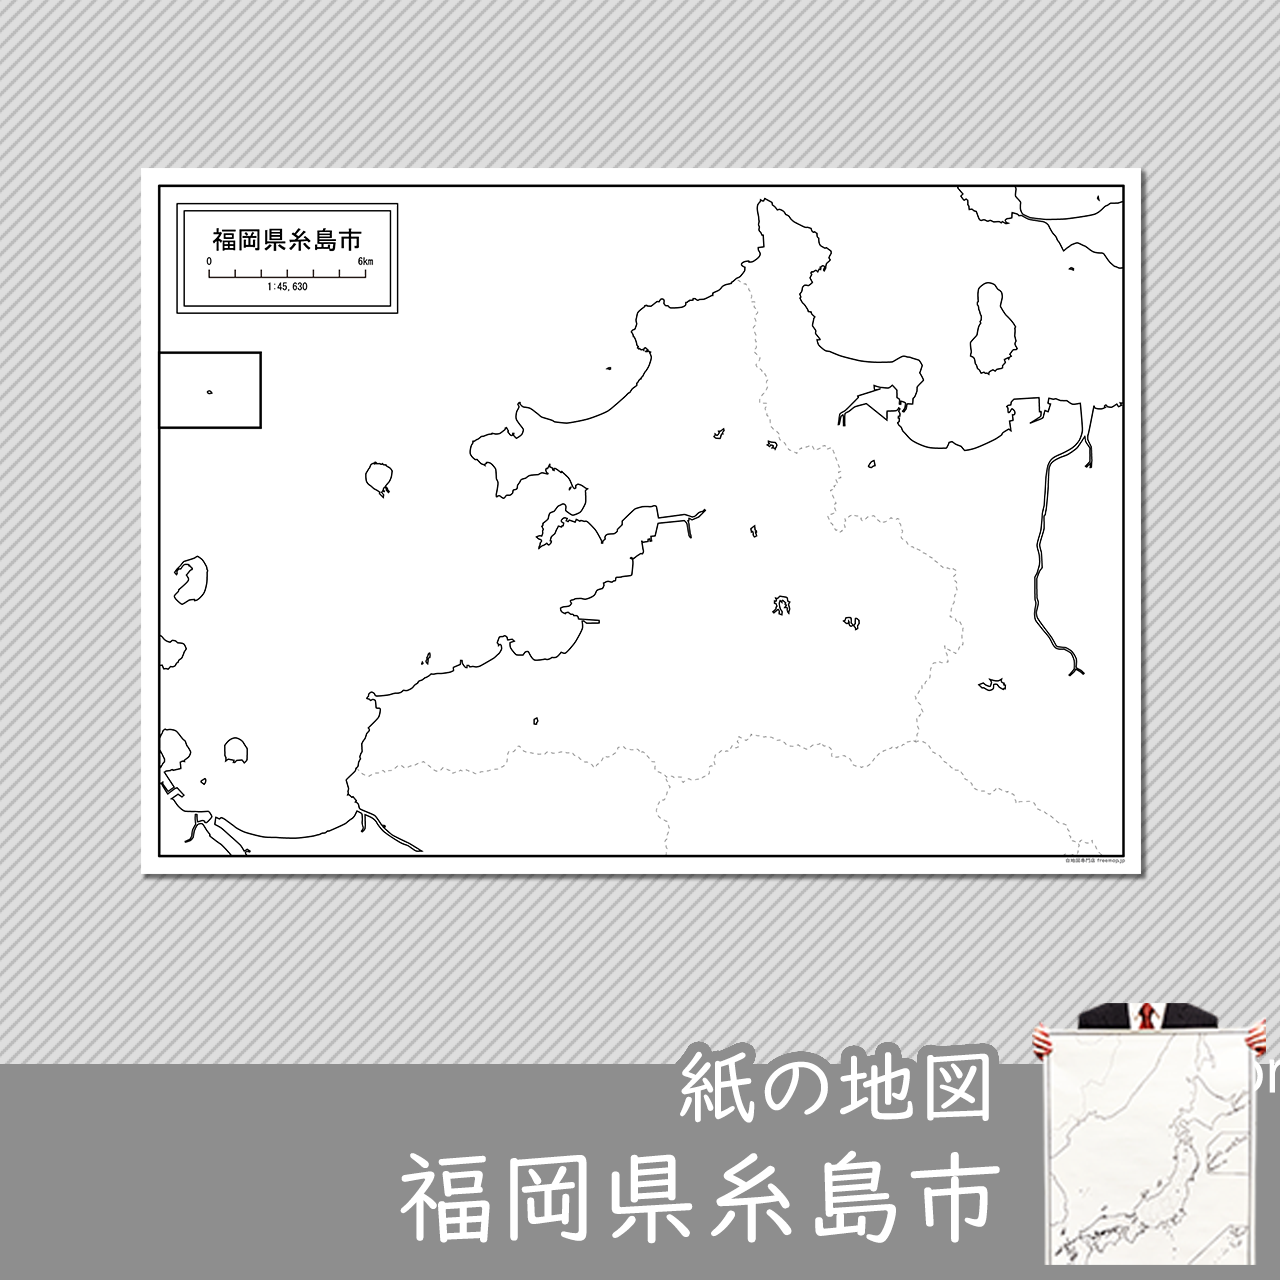 糸島市の紙の白地図のサムネイル